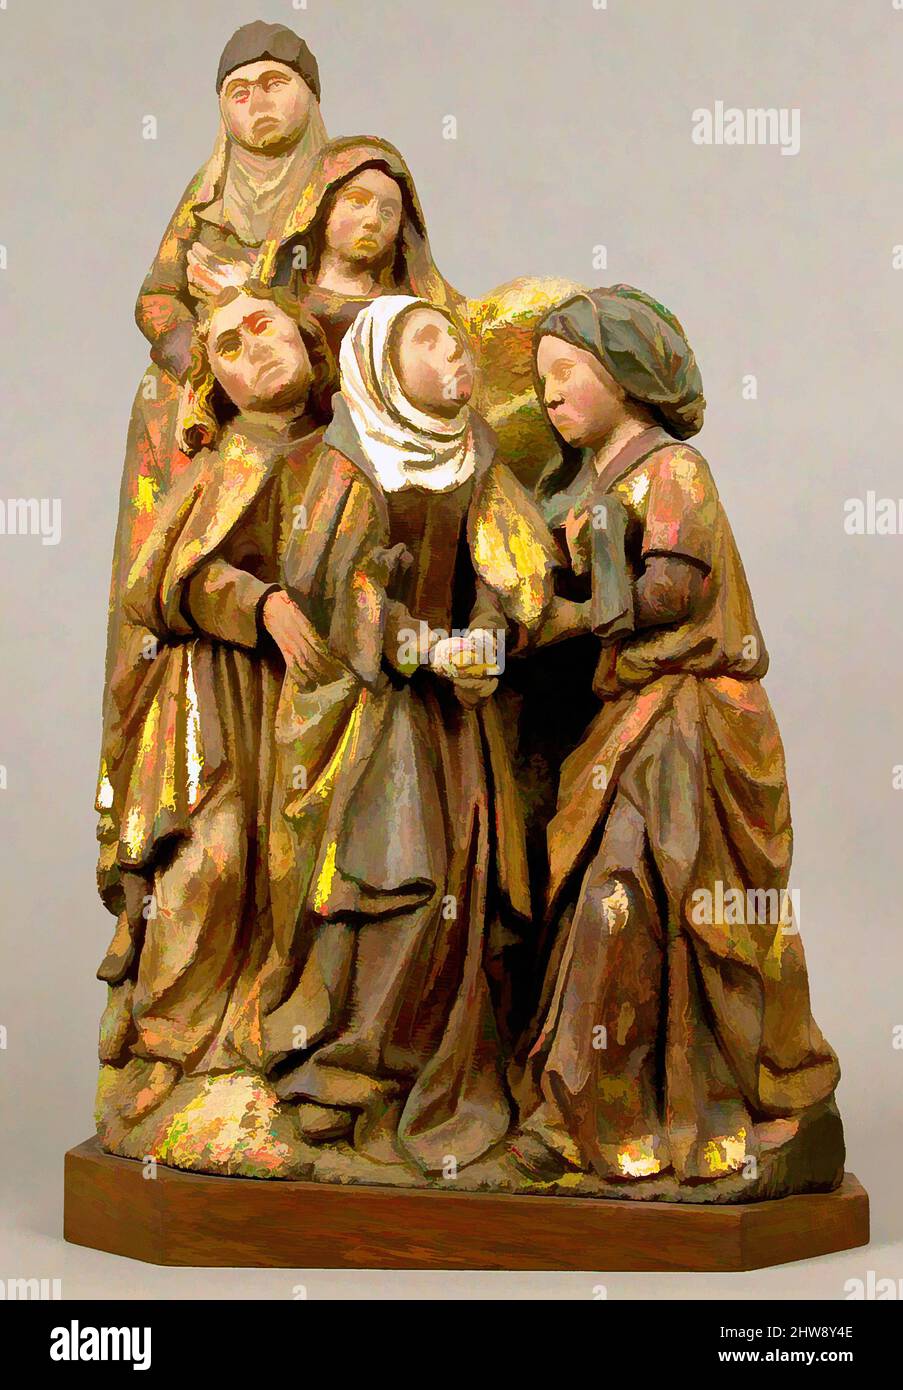 Kunst inspiriert von der Jungfrau Maria, dem Heiligen Johannes und den drei Heiligen Frauen aus einer Kreuzigung, Ende des 15.. Jahrhunderts, hergestellt in Brüssel, Südniederländisch, Eiche mit Polychromie und Vergoldung, Overall (mit Sockel): 24 7/8 x 15 1/8 x 5 3/4 Zoll (63,2 x 38,4 x 14,6 cm), Skulpturen-Holz, Klassisches Werk, das von Artotop mit einem Schuss Moderne modernisiert wurde. Formen, Farbe und Wert, auffällige visuelle Wirkung auf Kunst. Emotionen durch Freiheit von Kunstwerken auf zeitgemäße Weise. Eine zeitlose Botschaft, die eine wild kreative neue Richtung verfolgt. Künstler, die sich dem digitalen Medium zuwenden und die Artotop NFT erschaffen Stockfoto